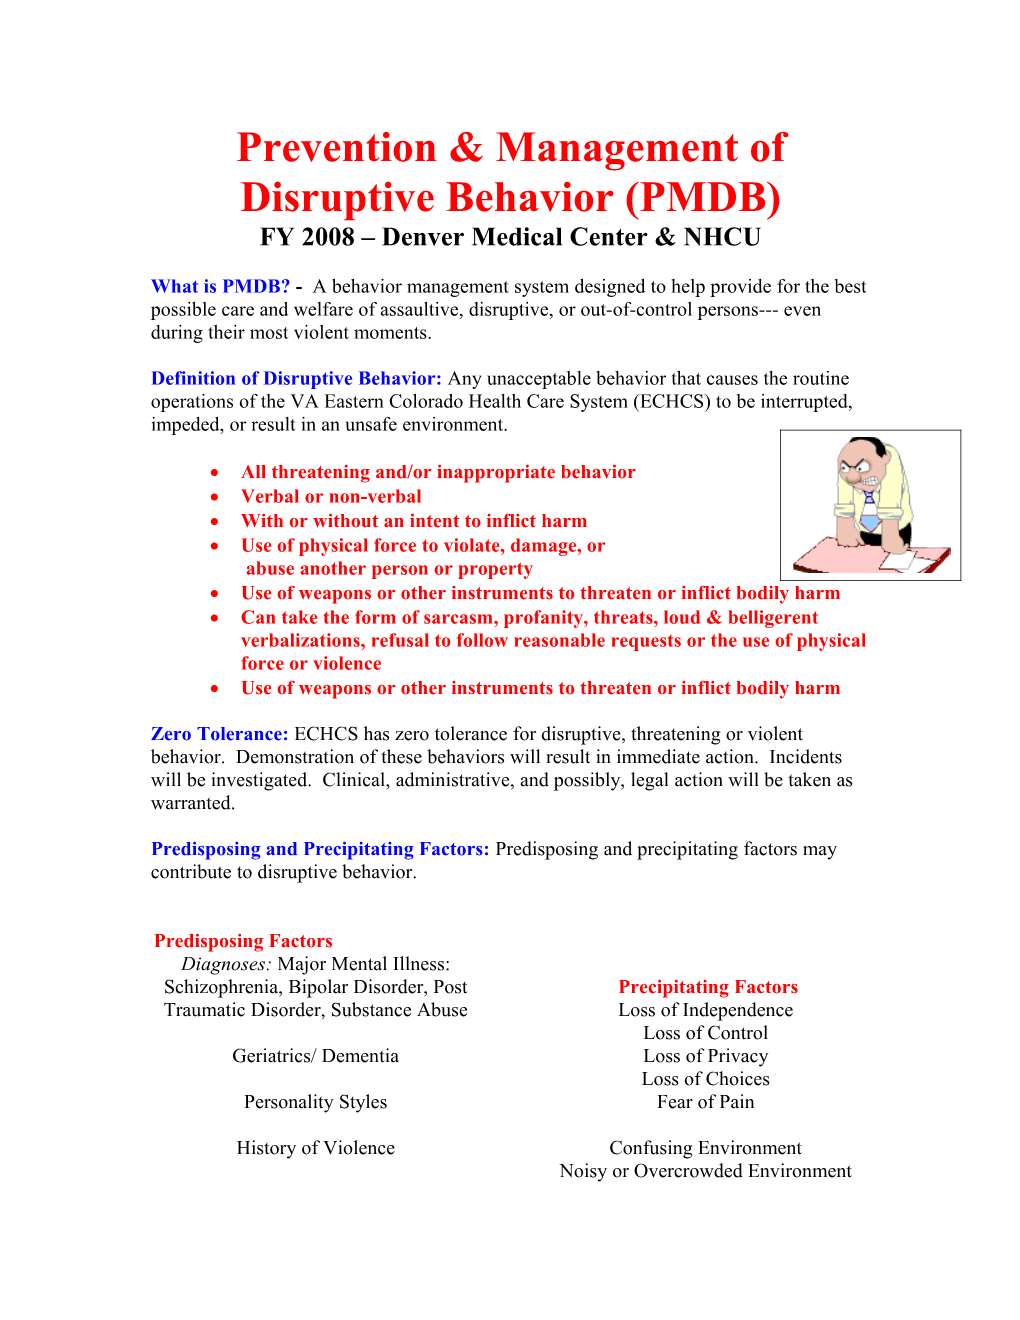 Prevention & Management of Disruptive Behavior